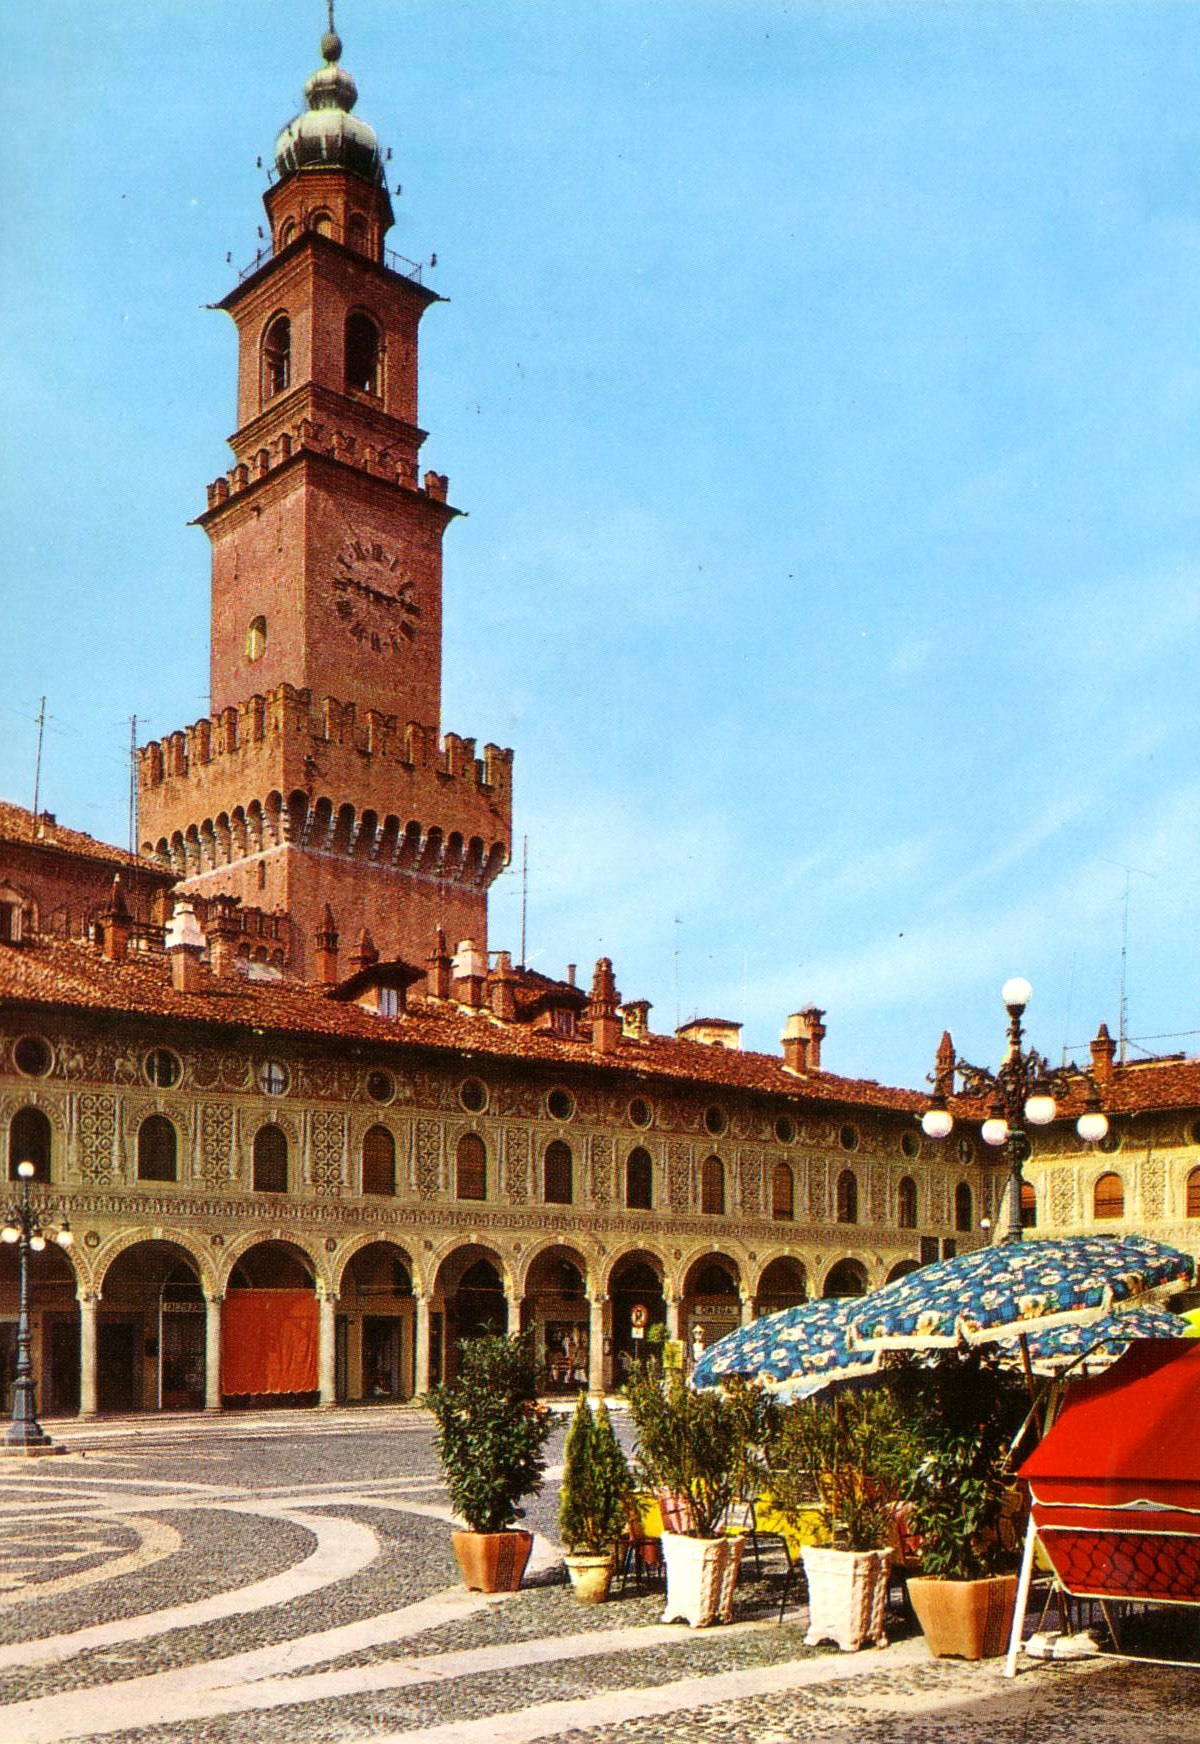 2 - Particolare della piazza ducale, fatta costruire nel 1494 da Ludovico il Moro